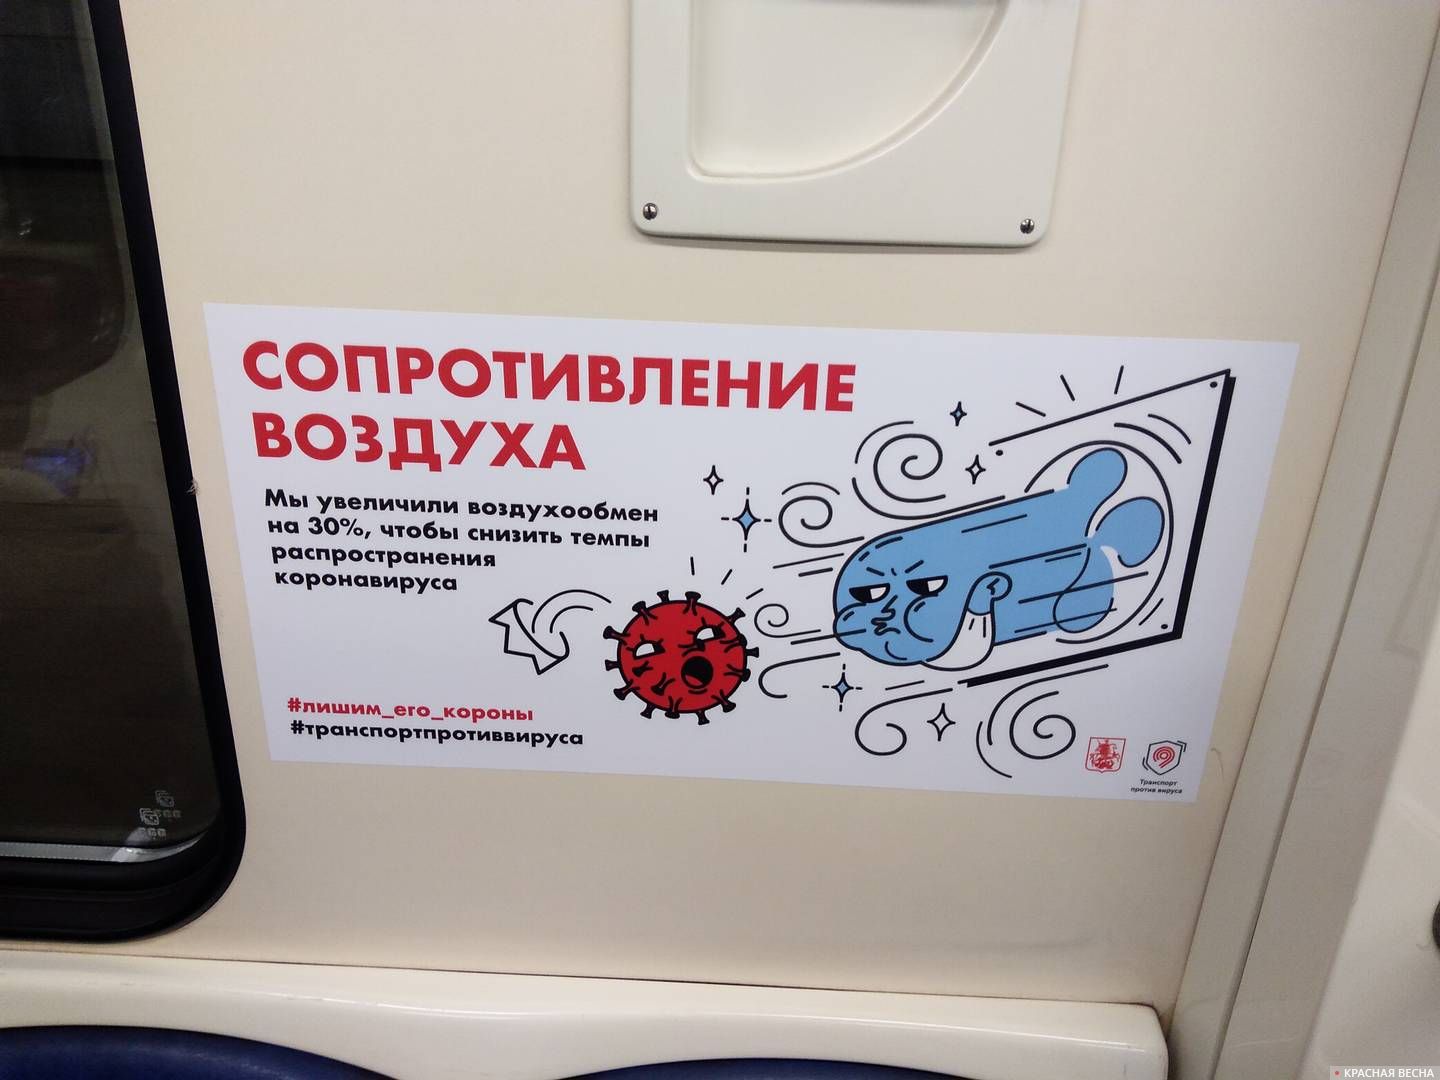 Москва. Плакат в вагоне метро